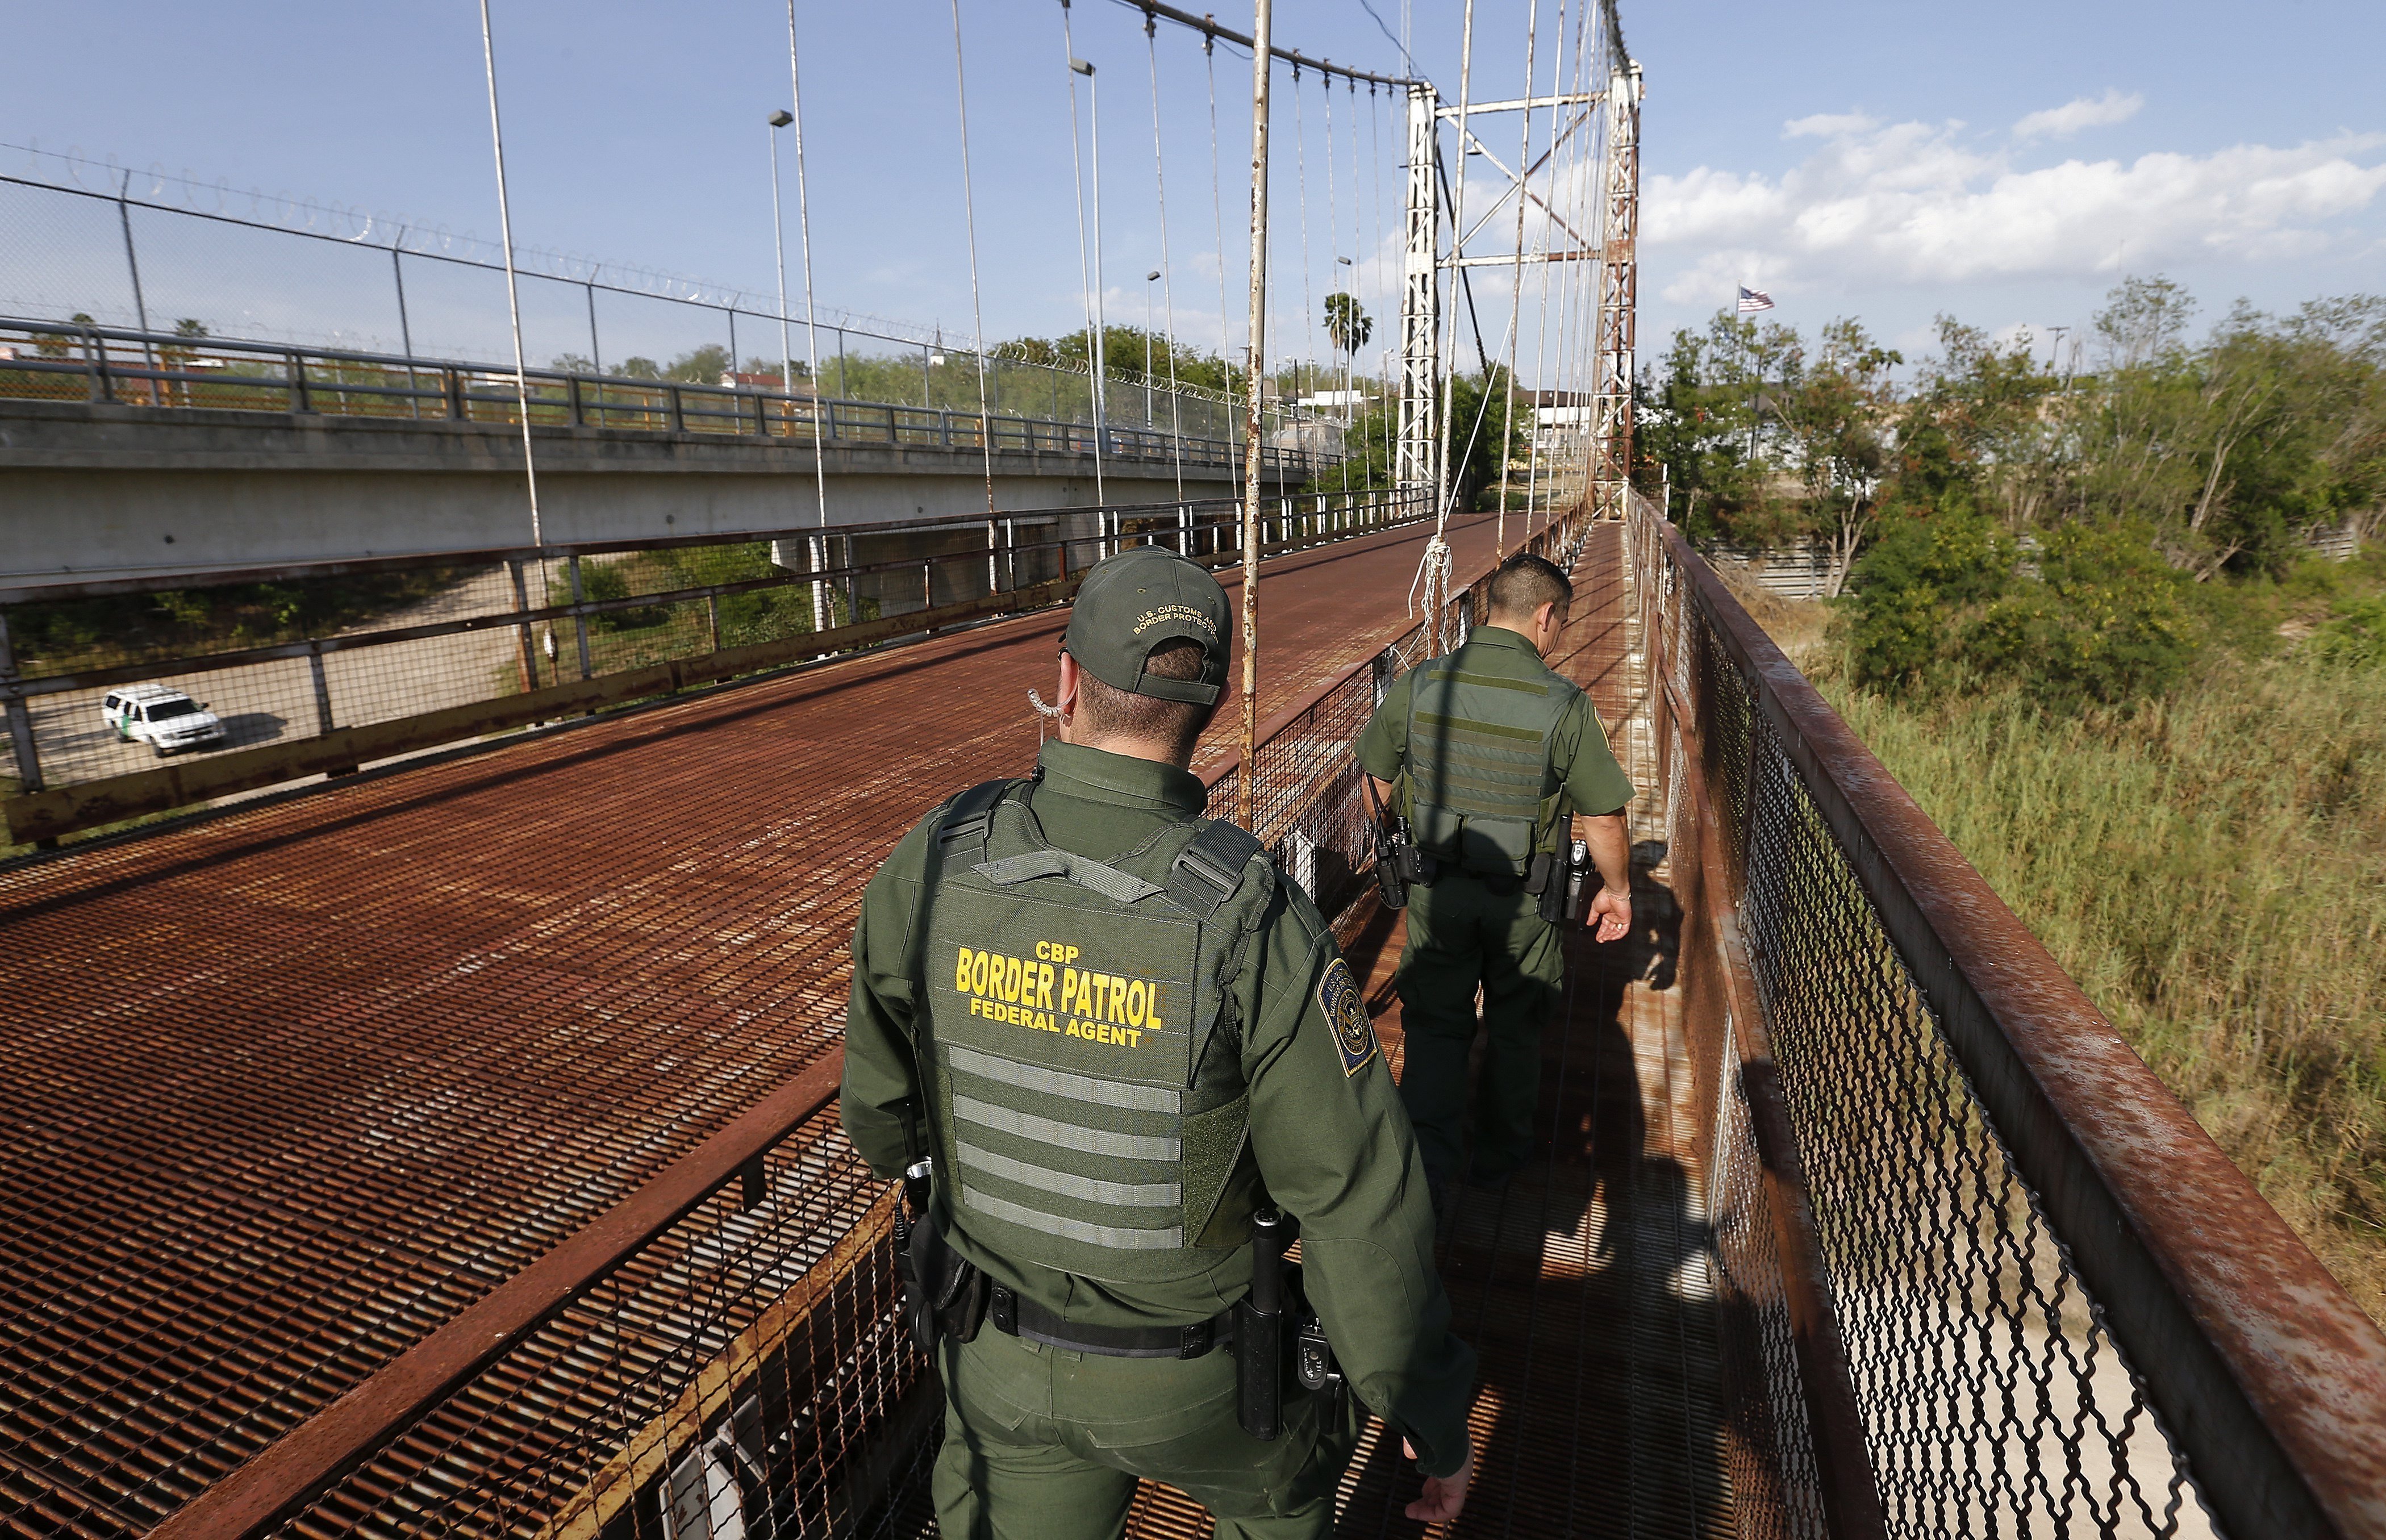 Els EUA estudien separar nens indocumentats dels seus pares al travessar frontera